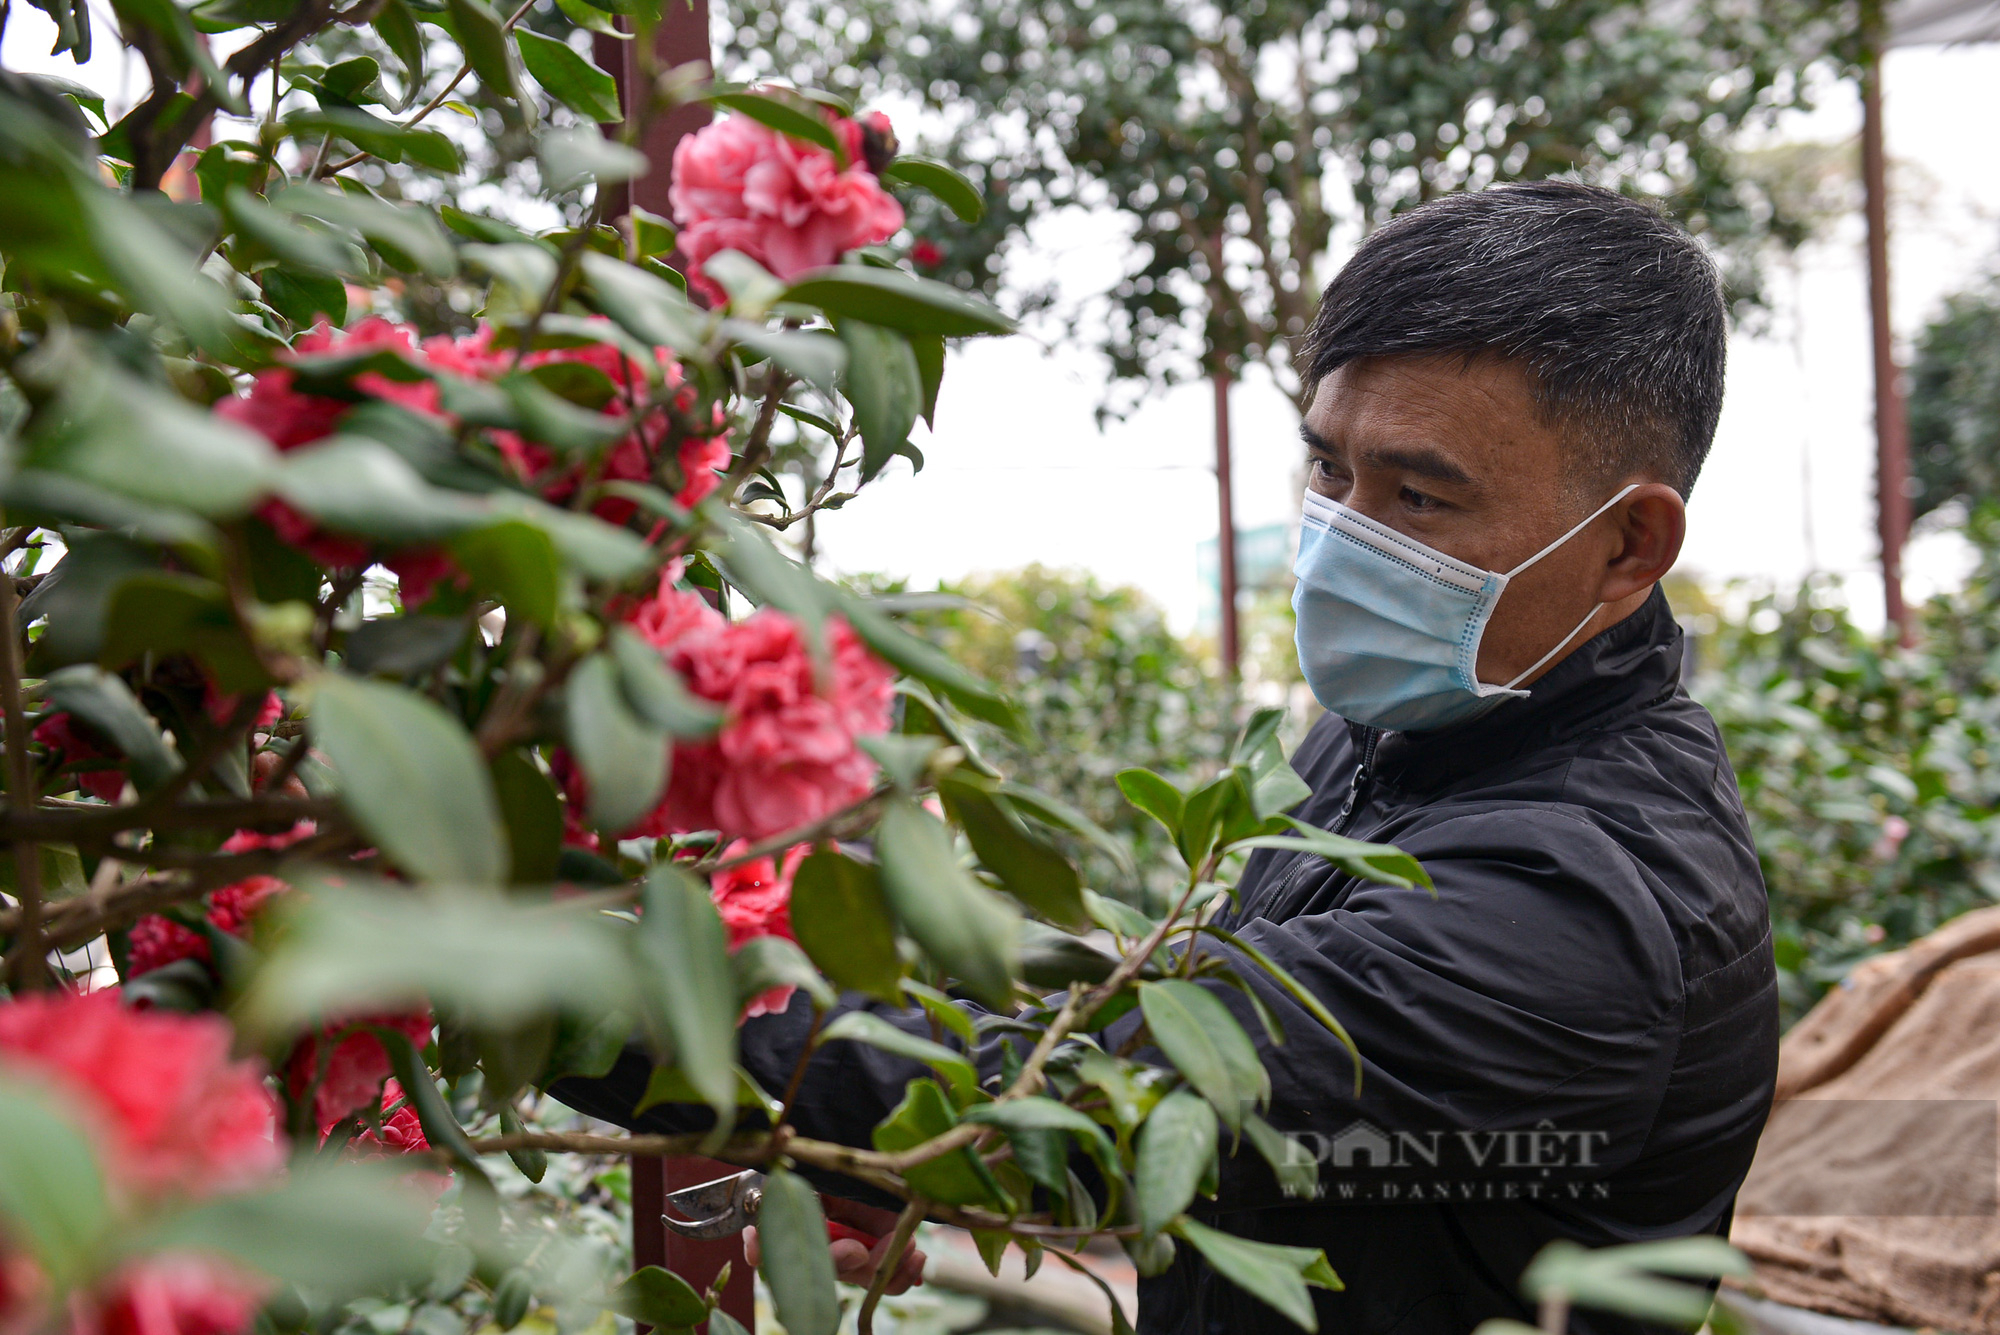 Ghé thăm vườn hoa trà trị giá bạc tỉ của anh nông dân tại Hưng Yên - Ảnh 3.